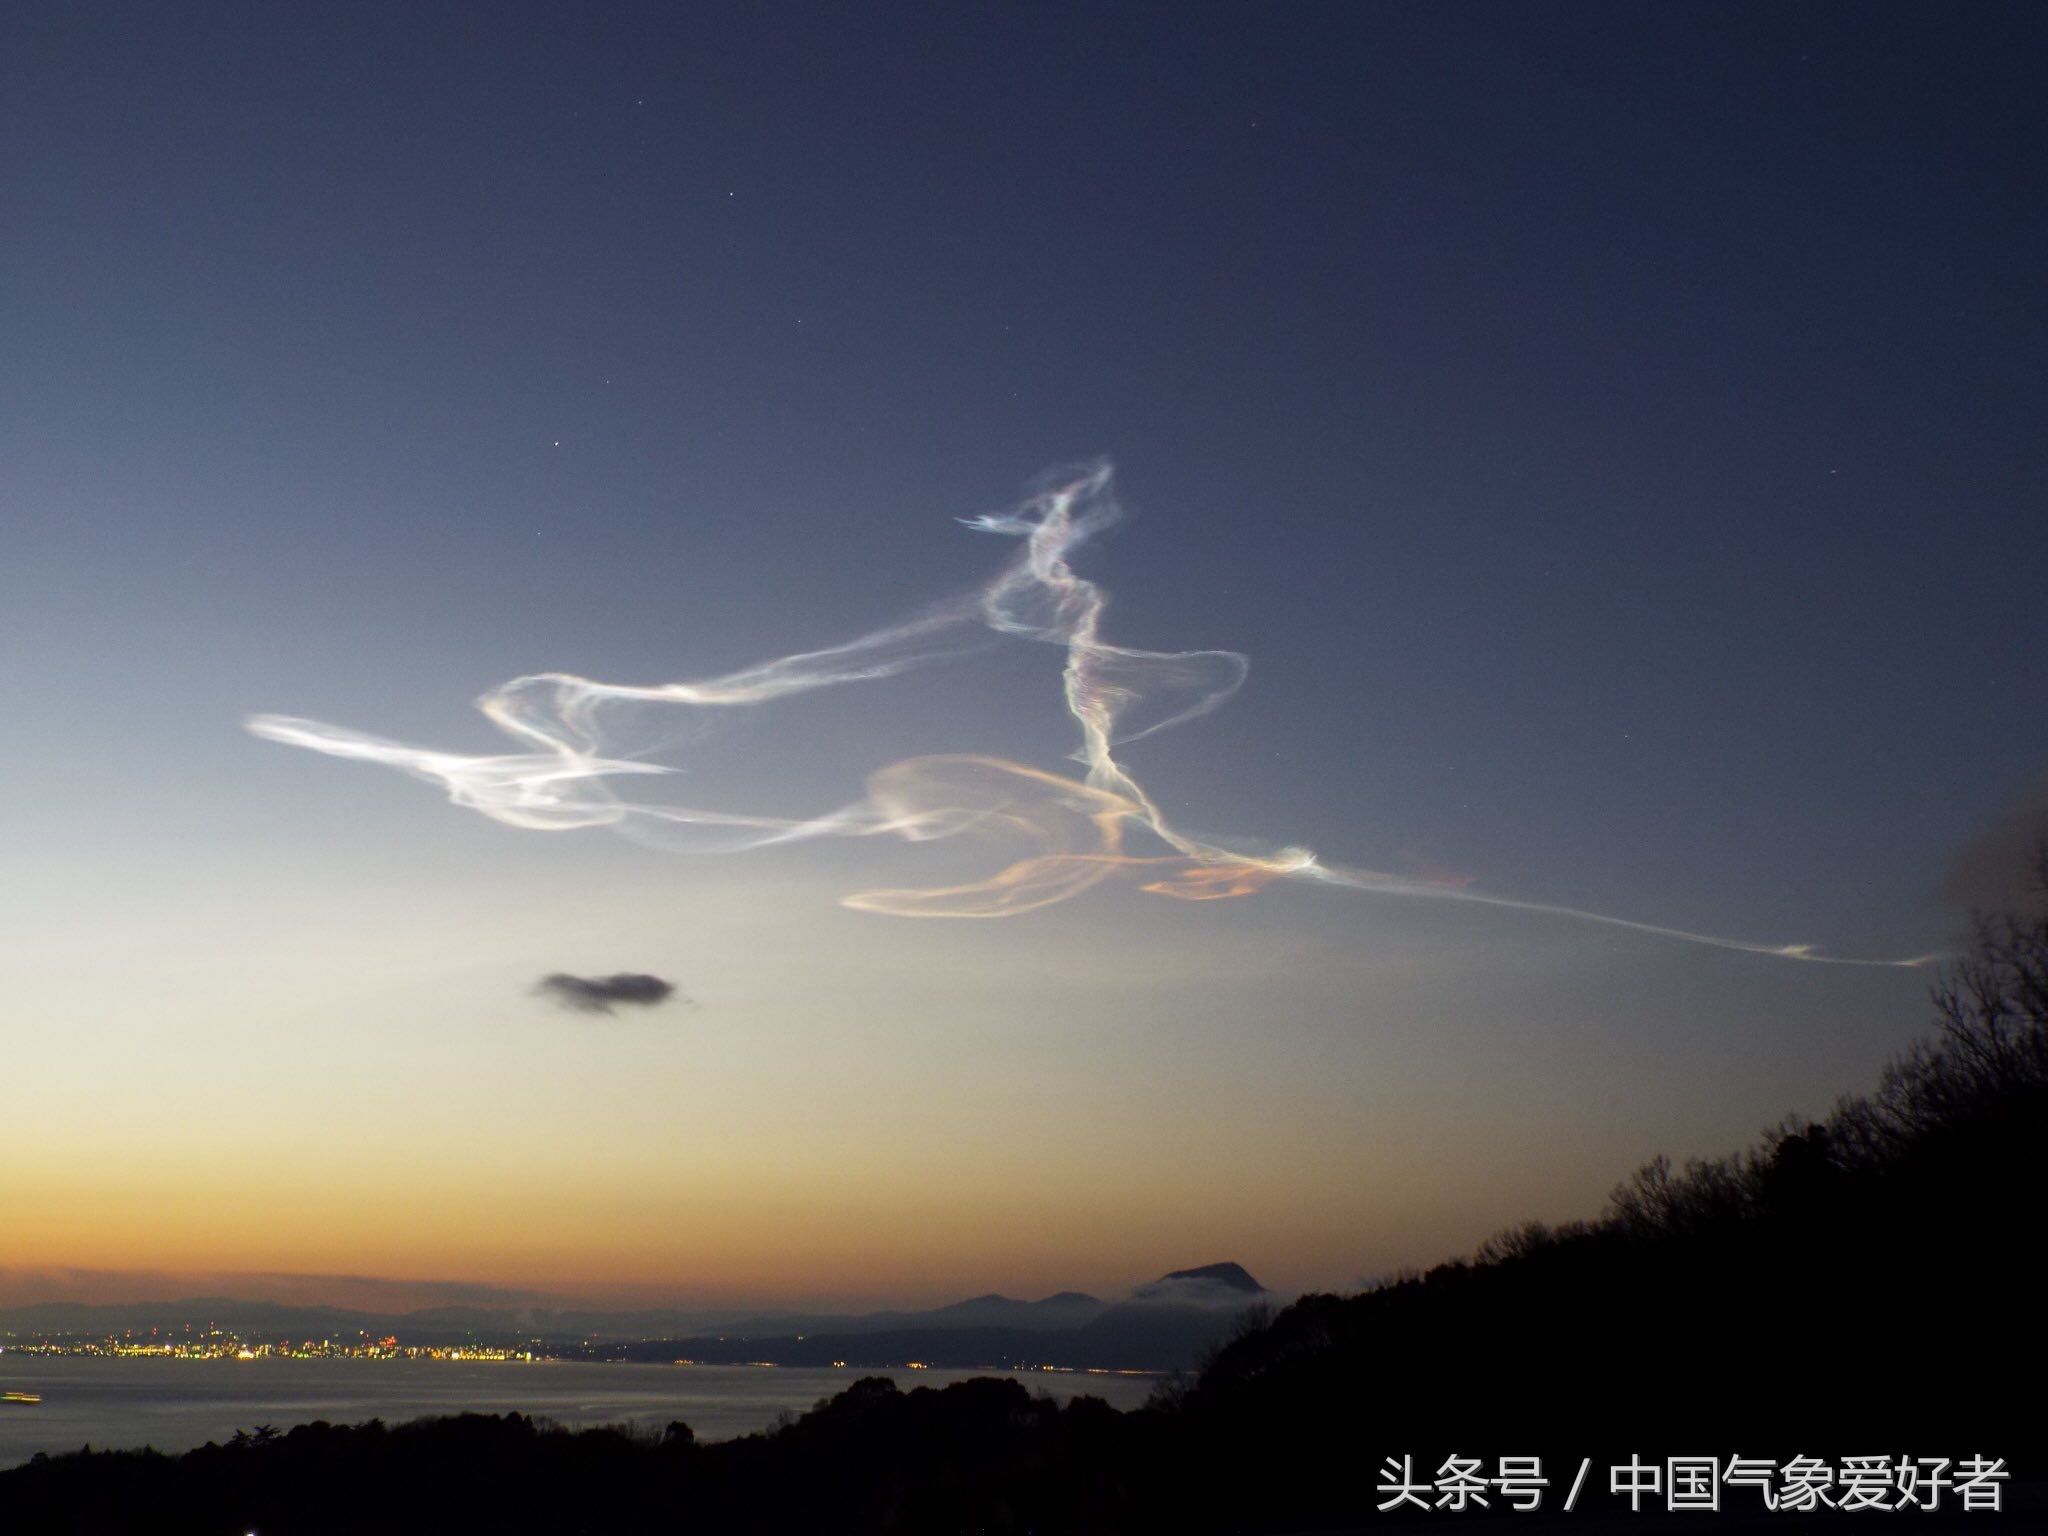 灾难先兆?日本出现几万米高的五彩夜光云似神仙抽烟